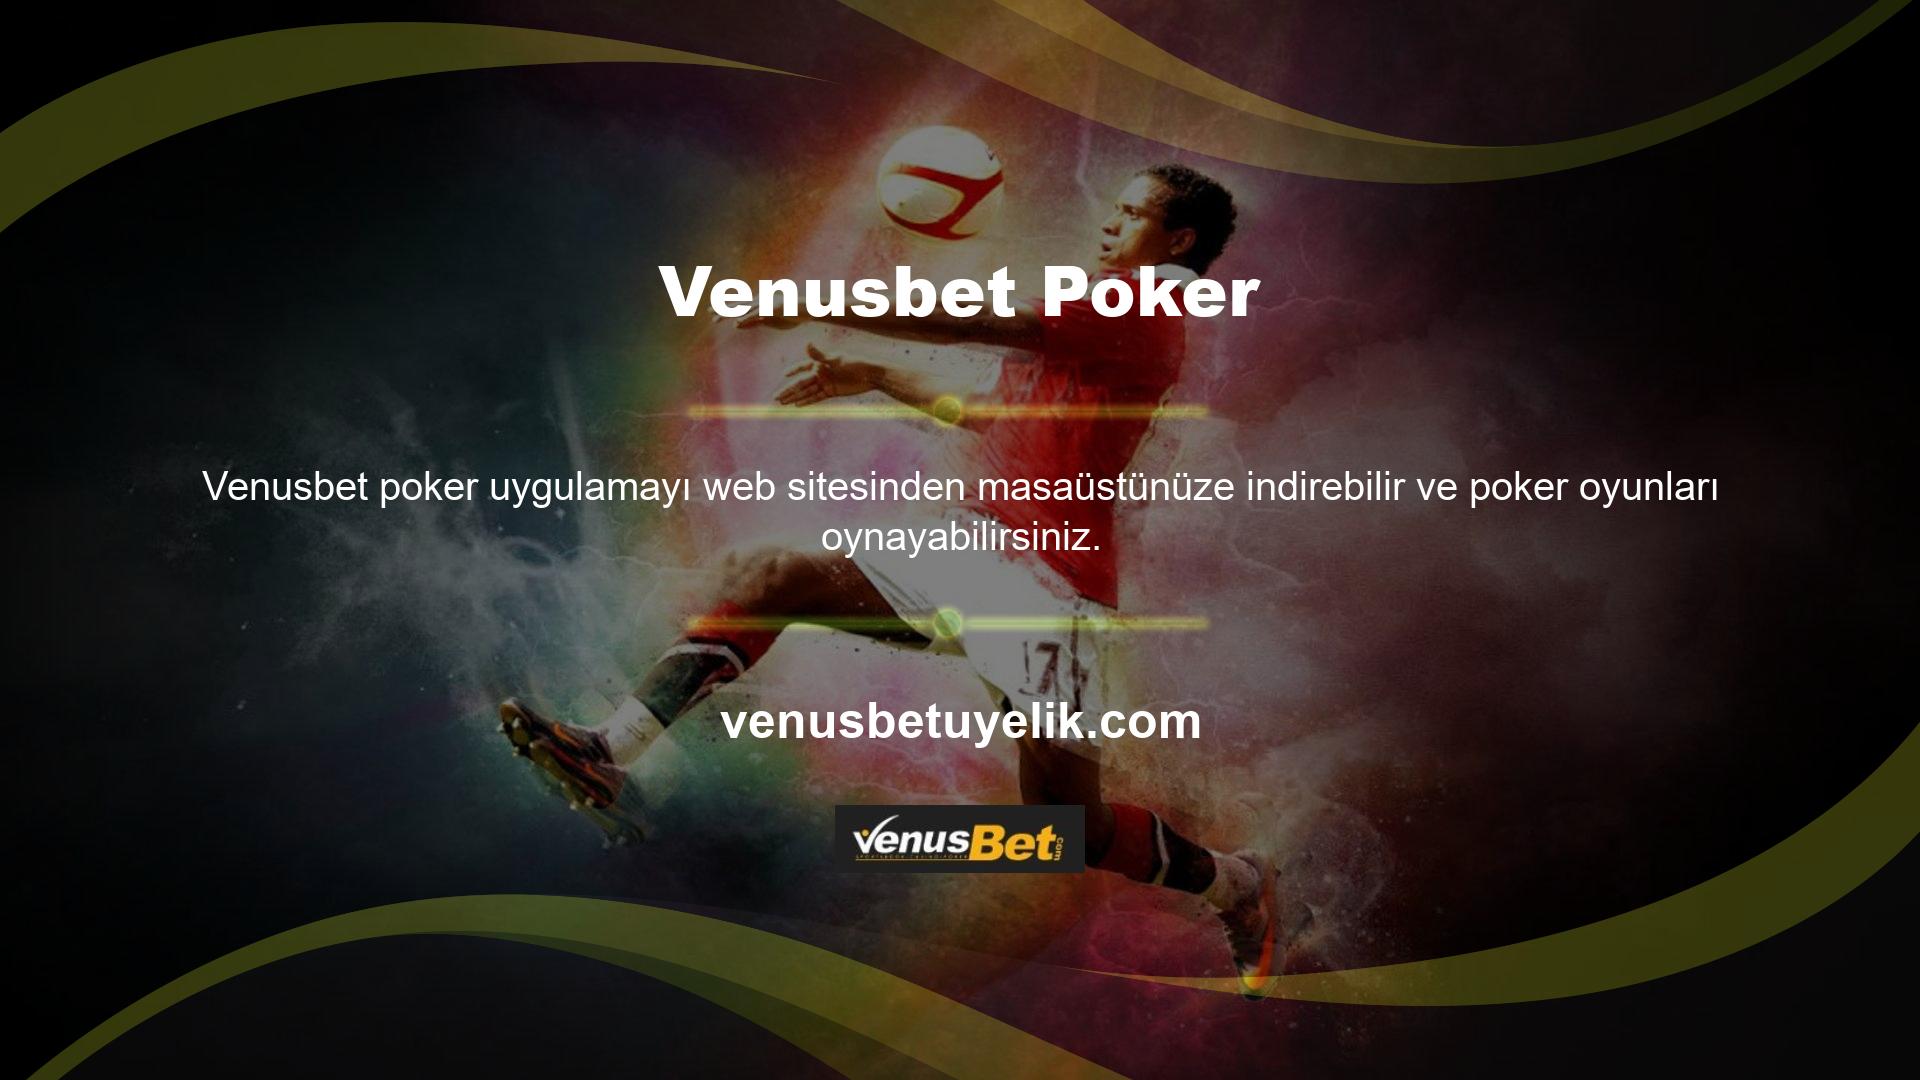 Ayrıca Venusbet canlı olarak beş farklı poker oyunu oynayabilirsiniz